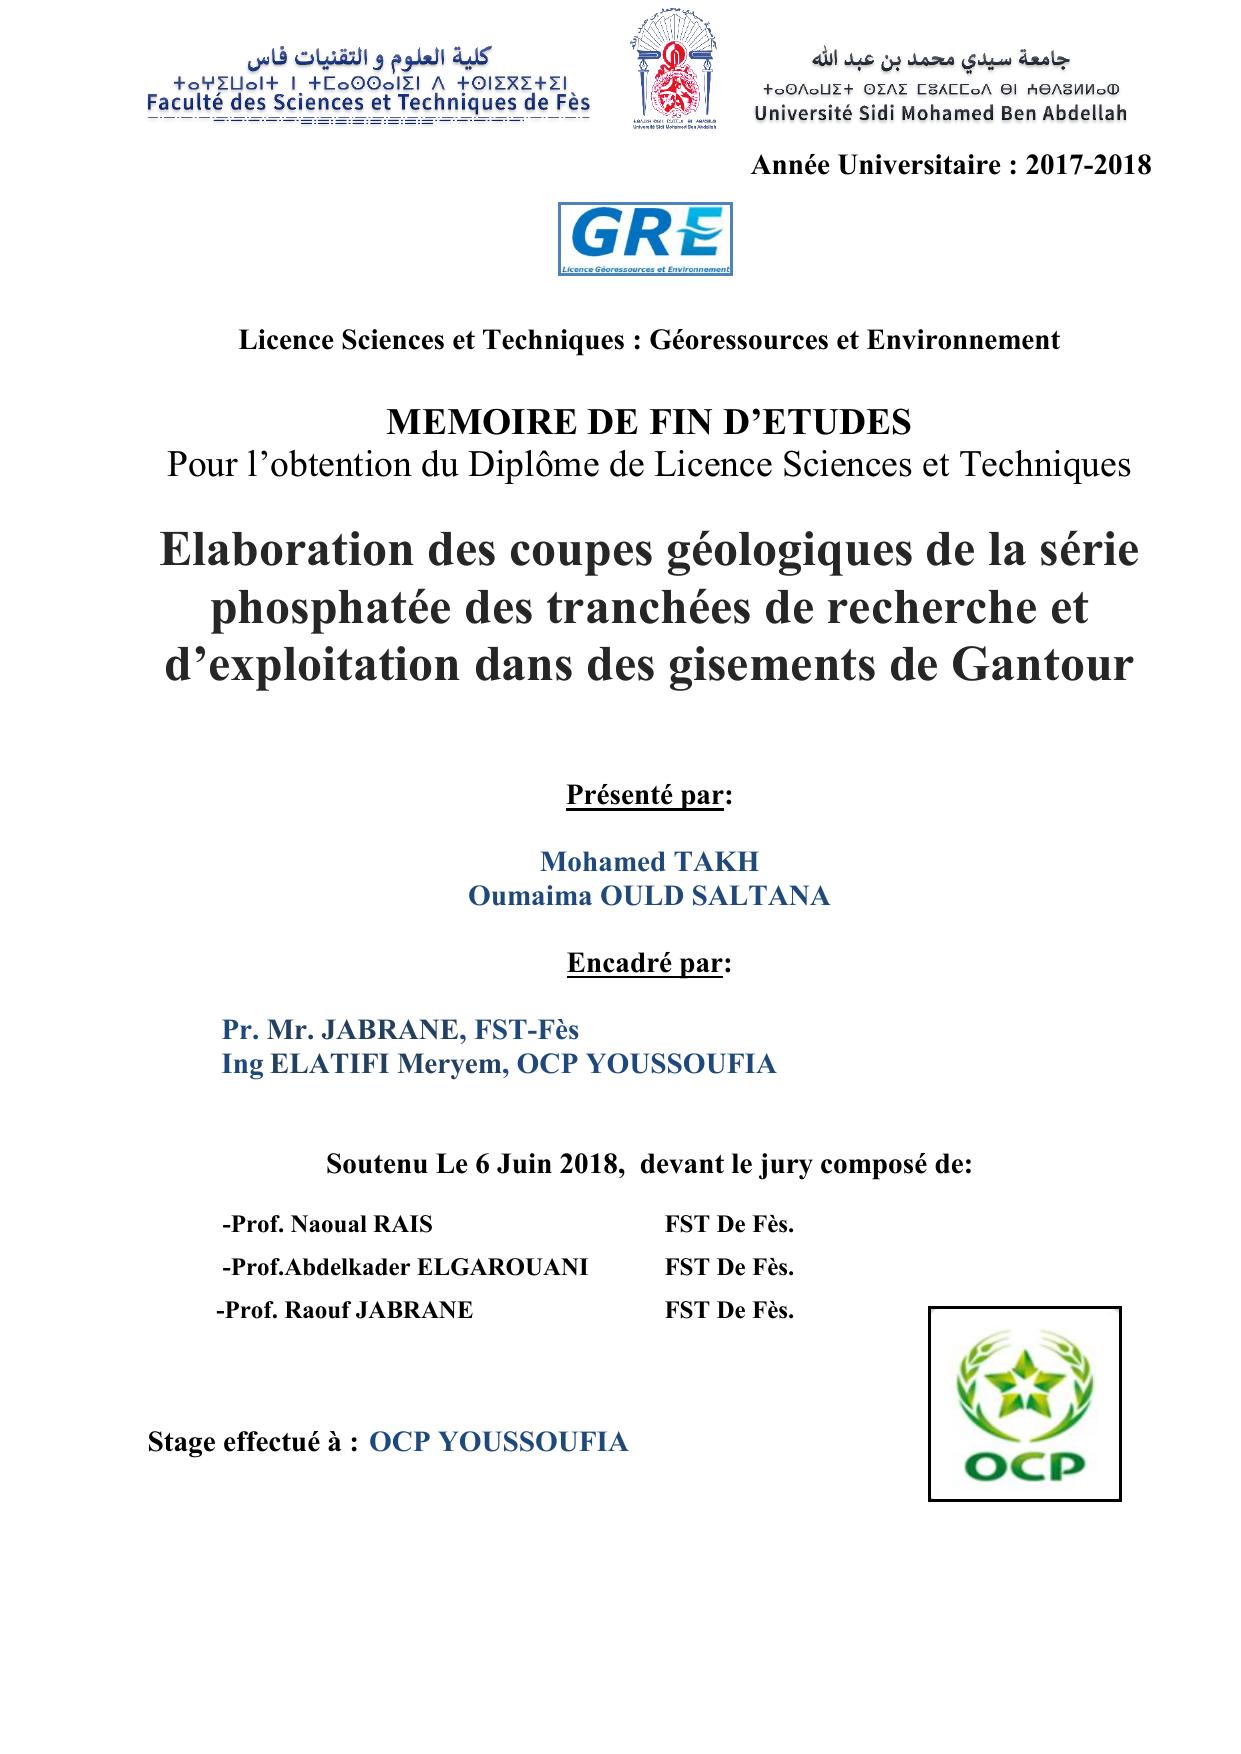 Elaboration des coupes géologiques de la série phosphatée des tranchées de recherche et d’exploitation dans des gisements de Gantour